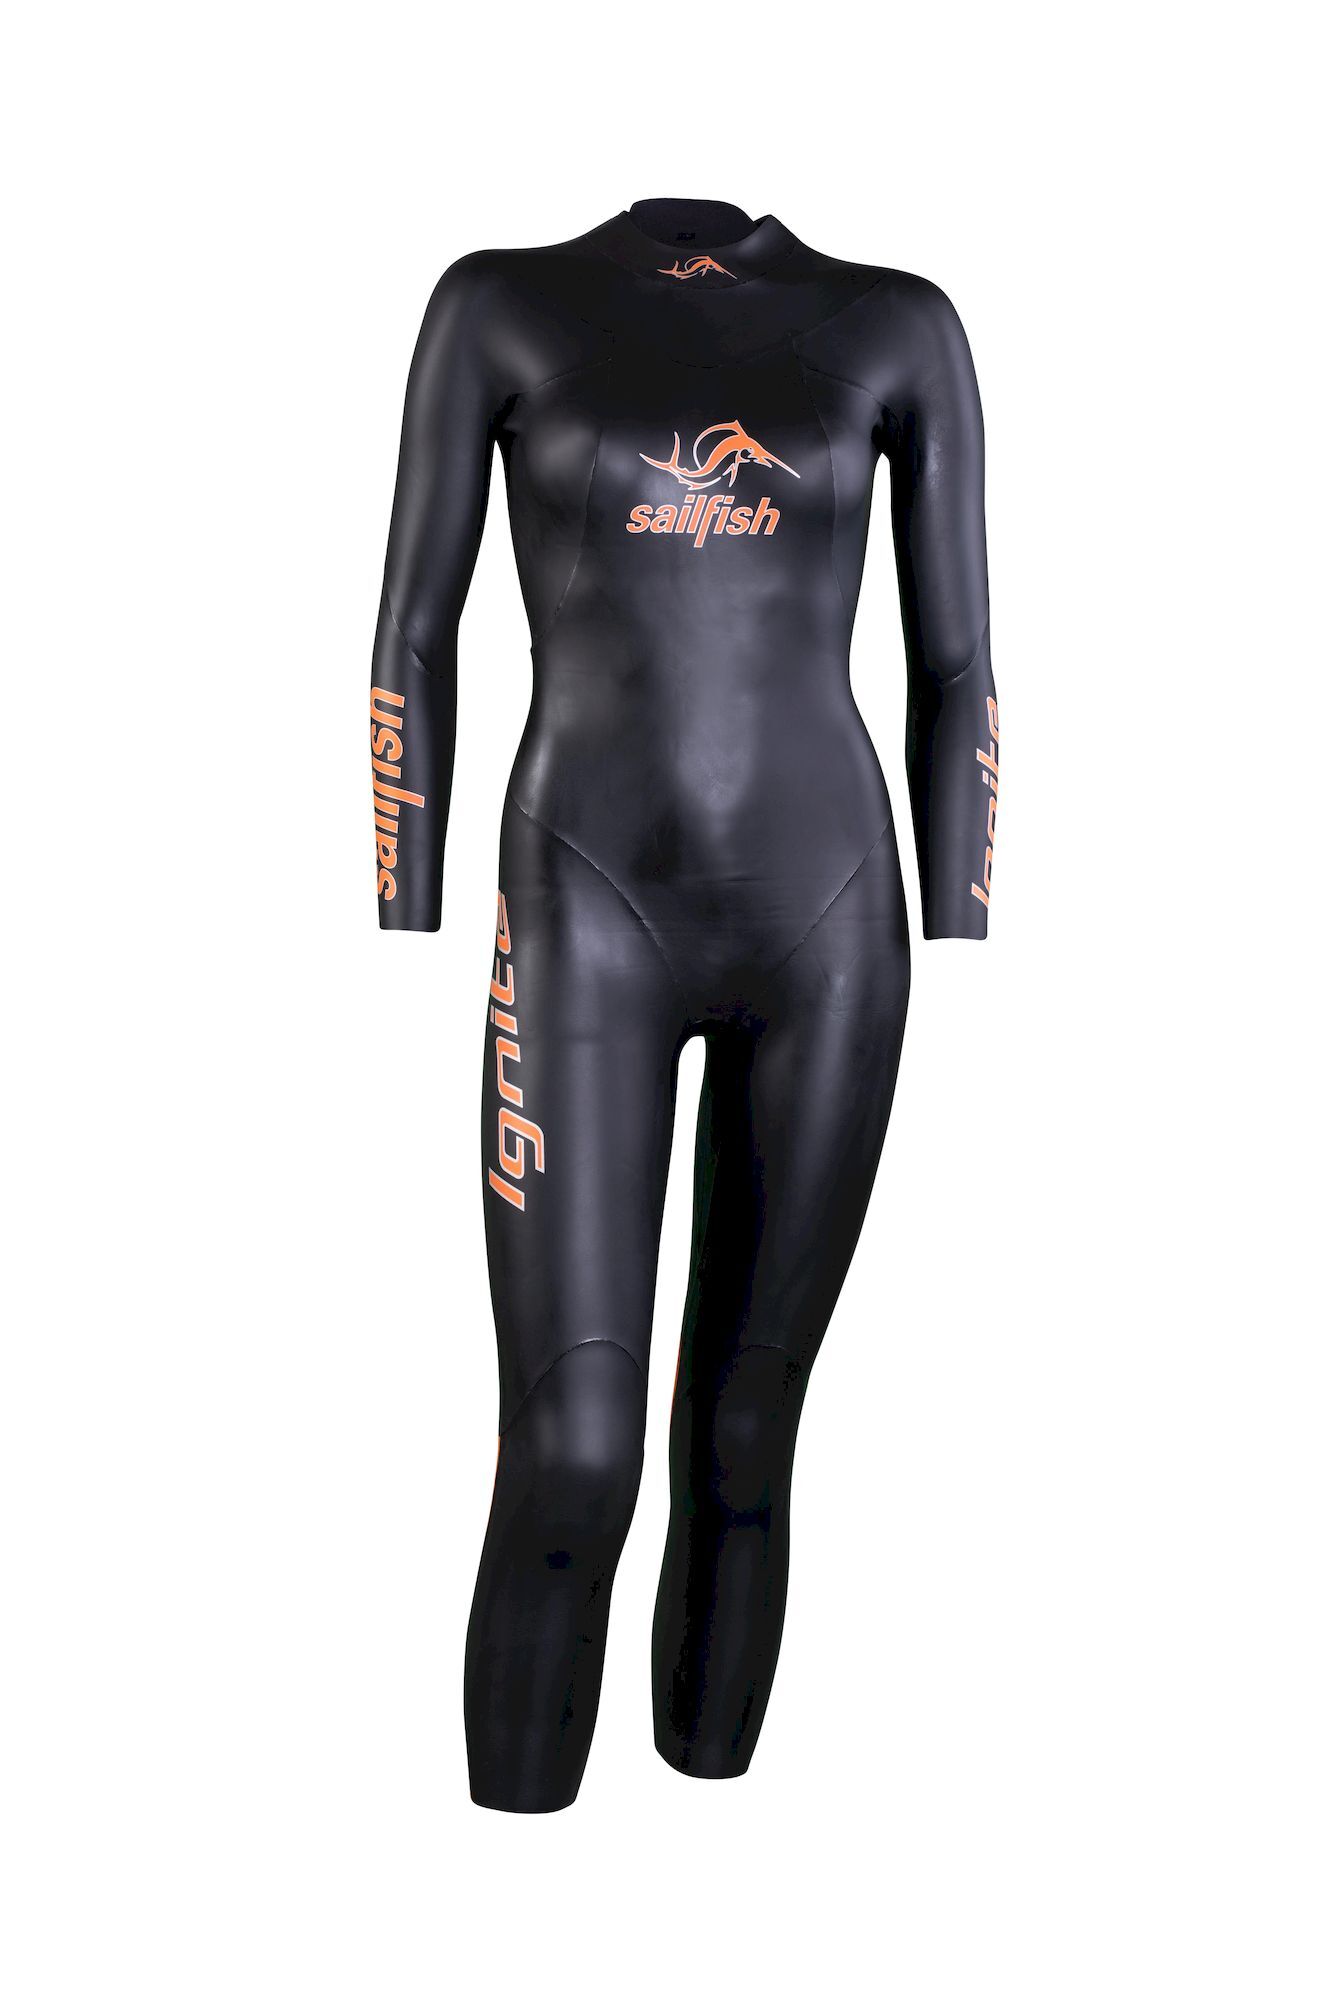 Sailfish Womens Ignite - Neoprene wetsuit - Women's